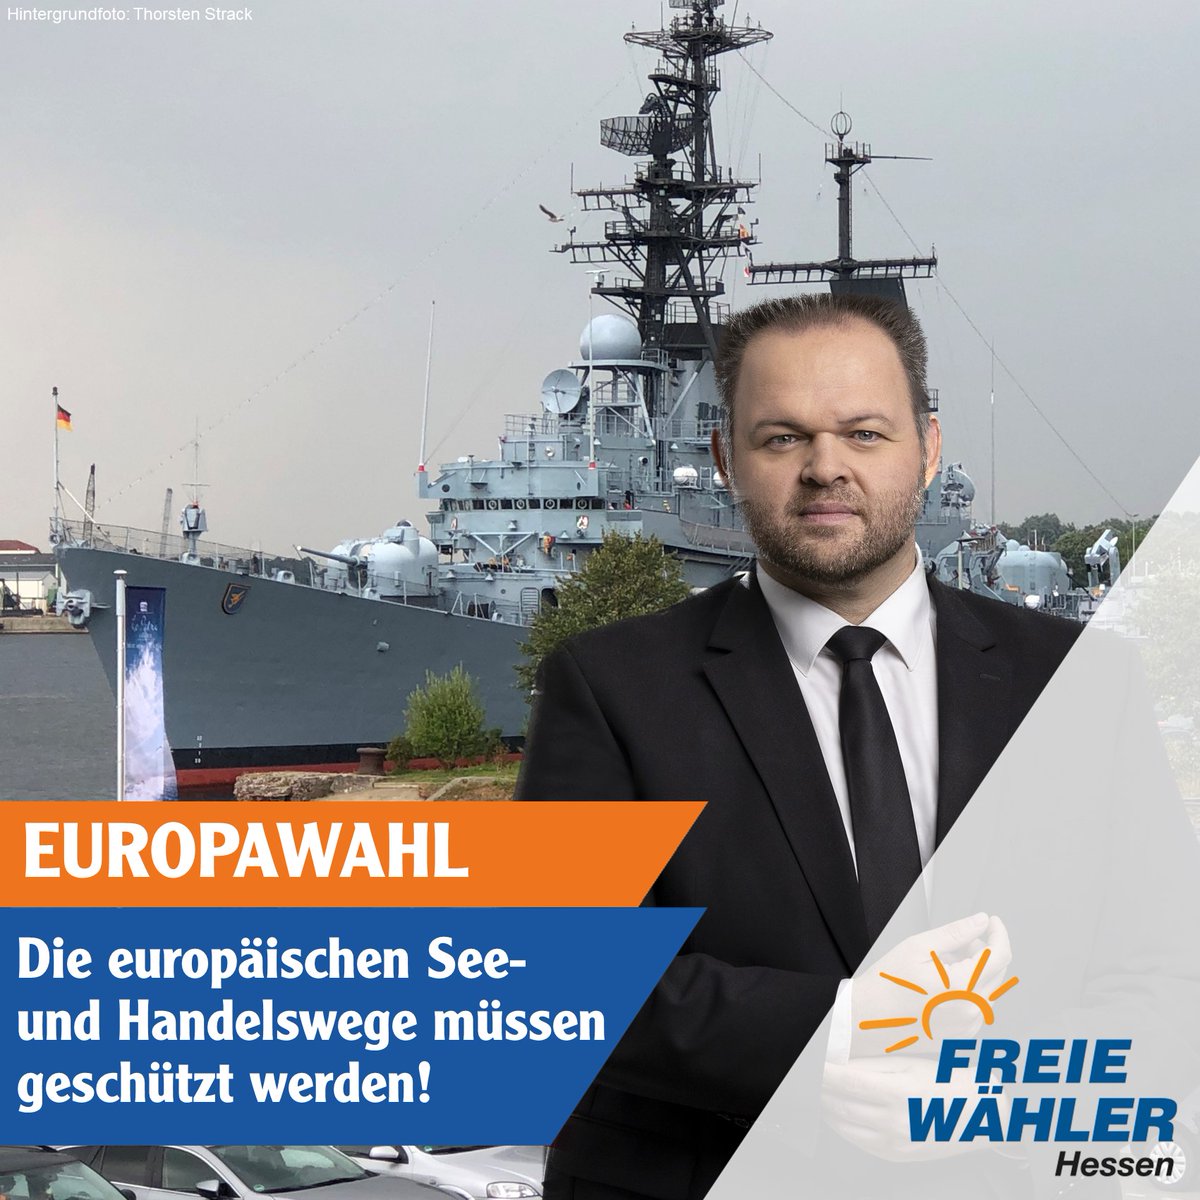 Unser gemeinsamer europäischer Außenhandel ist auf sichere See- und Handelswege angewiesen. Deshalb setzen wir FREIE WÄHLER uns für mehr Sicherheit auf den See- und Handelswegen ein. 

#FreieWähler #Europawahl #Europawahl2024 #Schiff #Sicherheit #Marine #EU #NATO #Handel